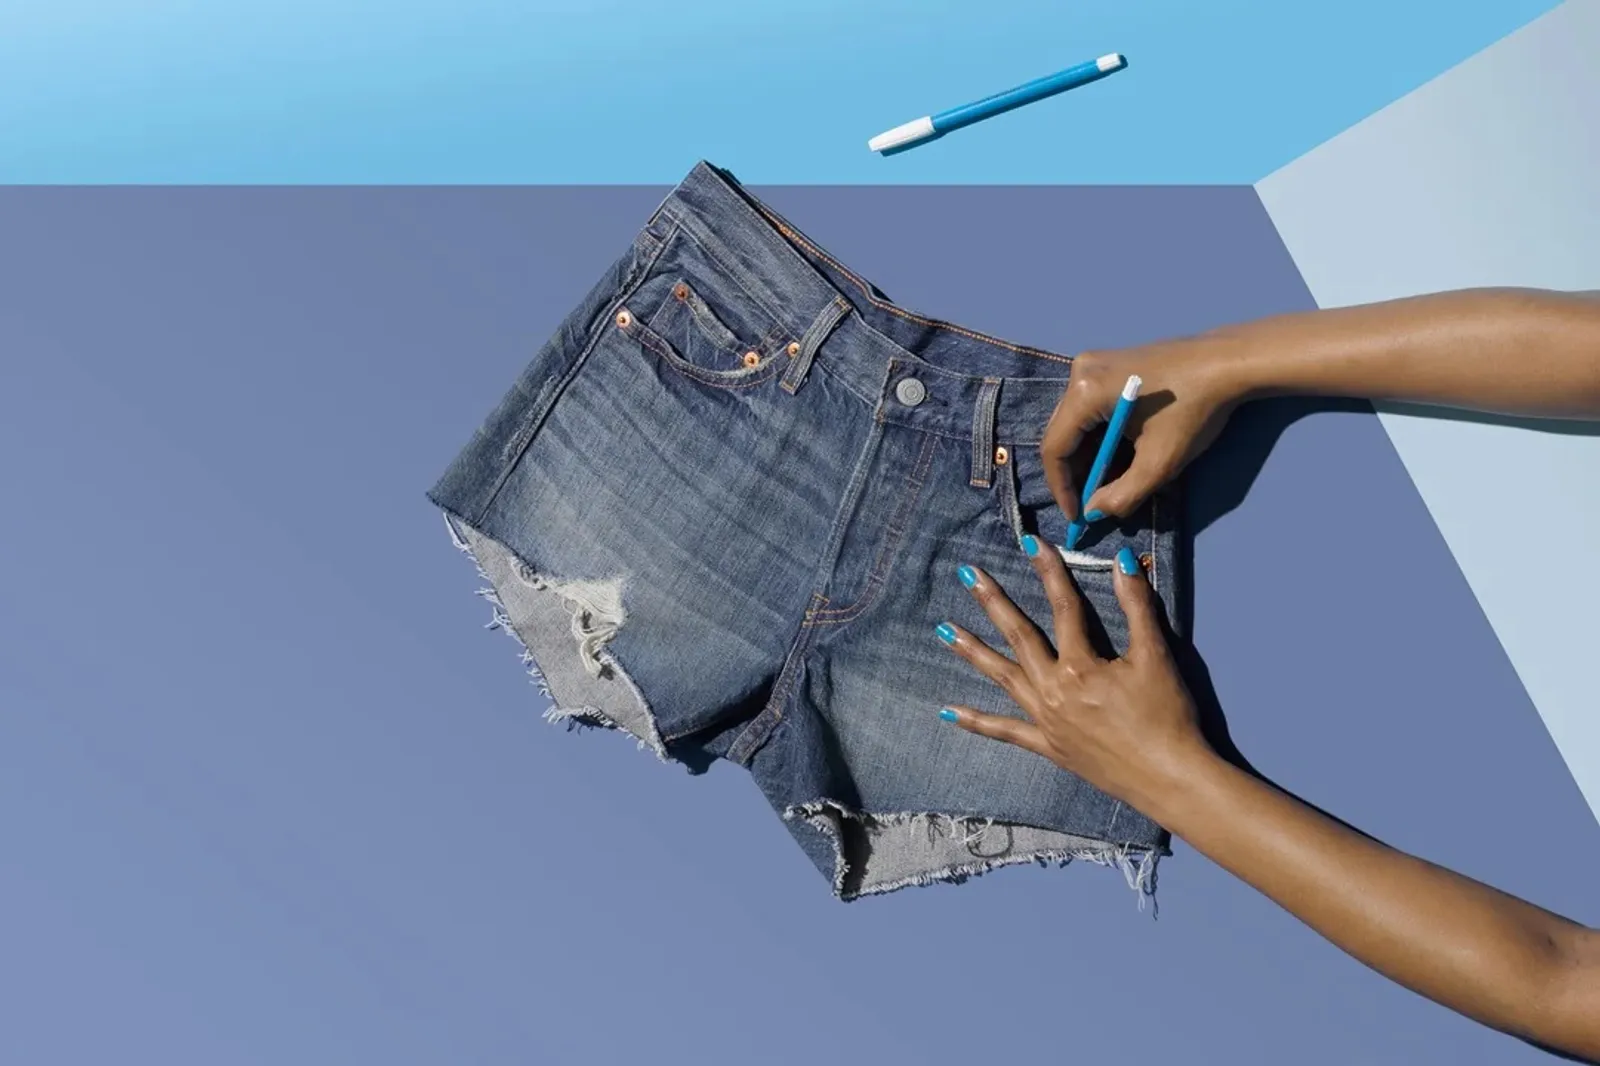 Hacks Celana Jeans, Dari Kesempitan hingga Ubah Desain 